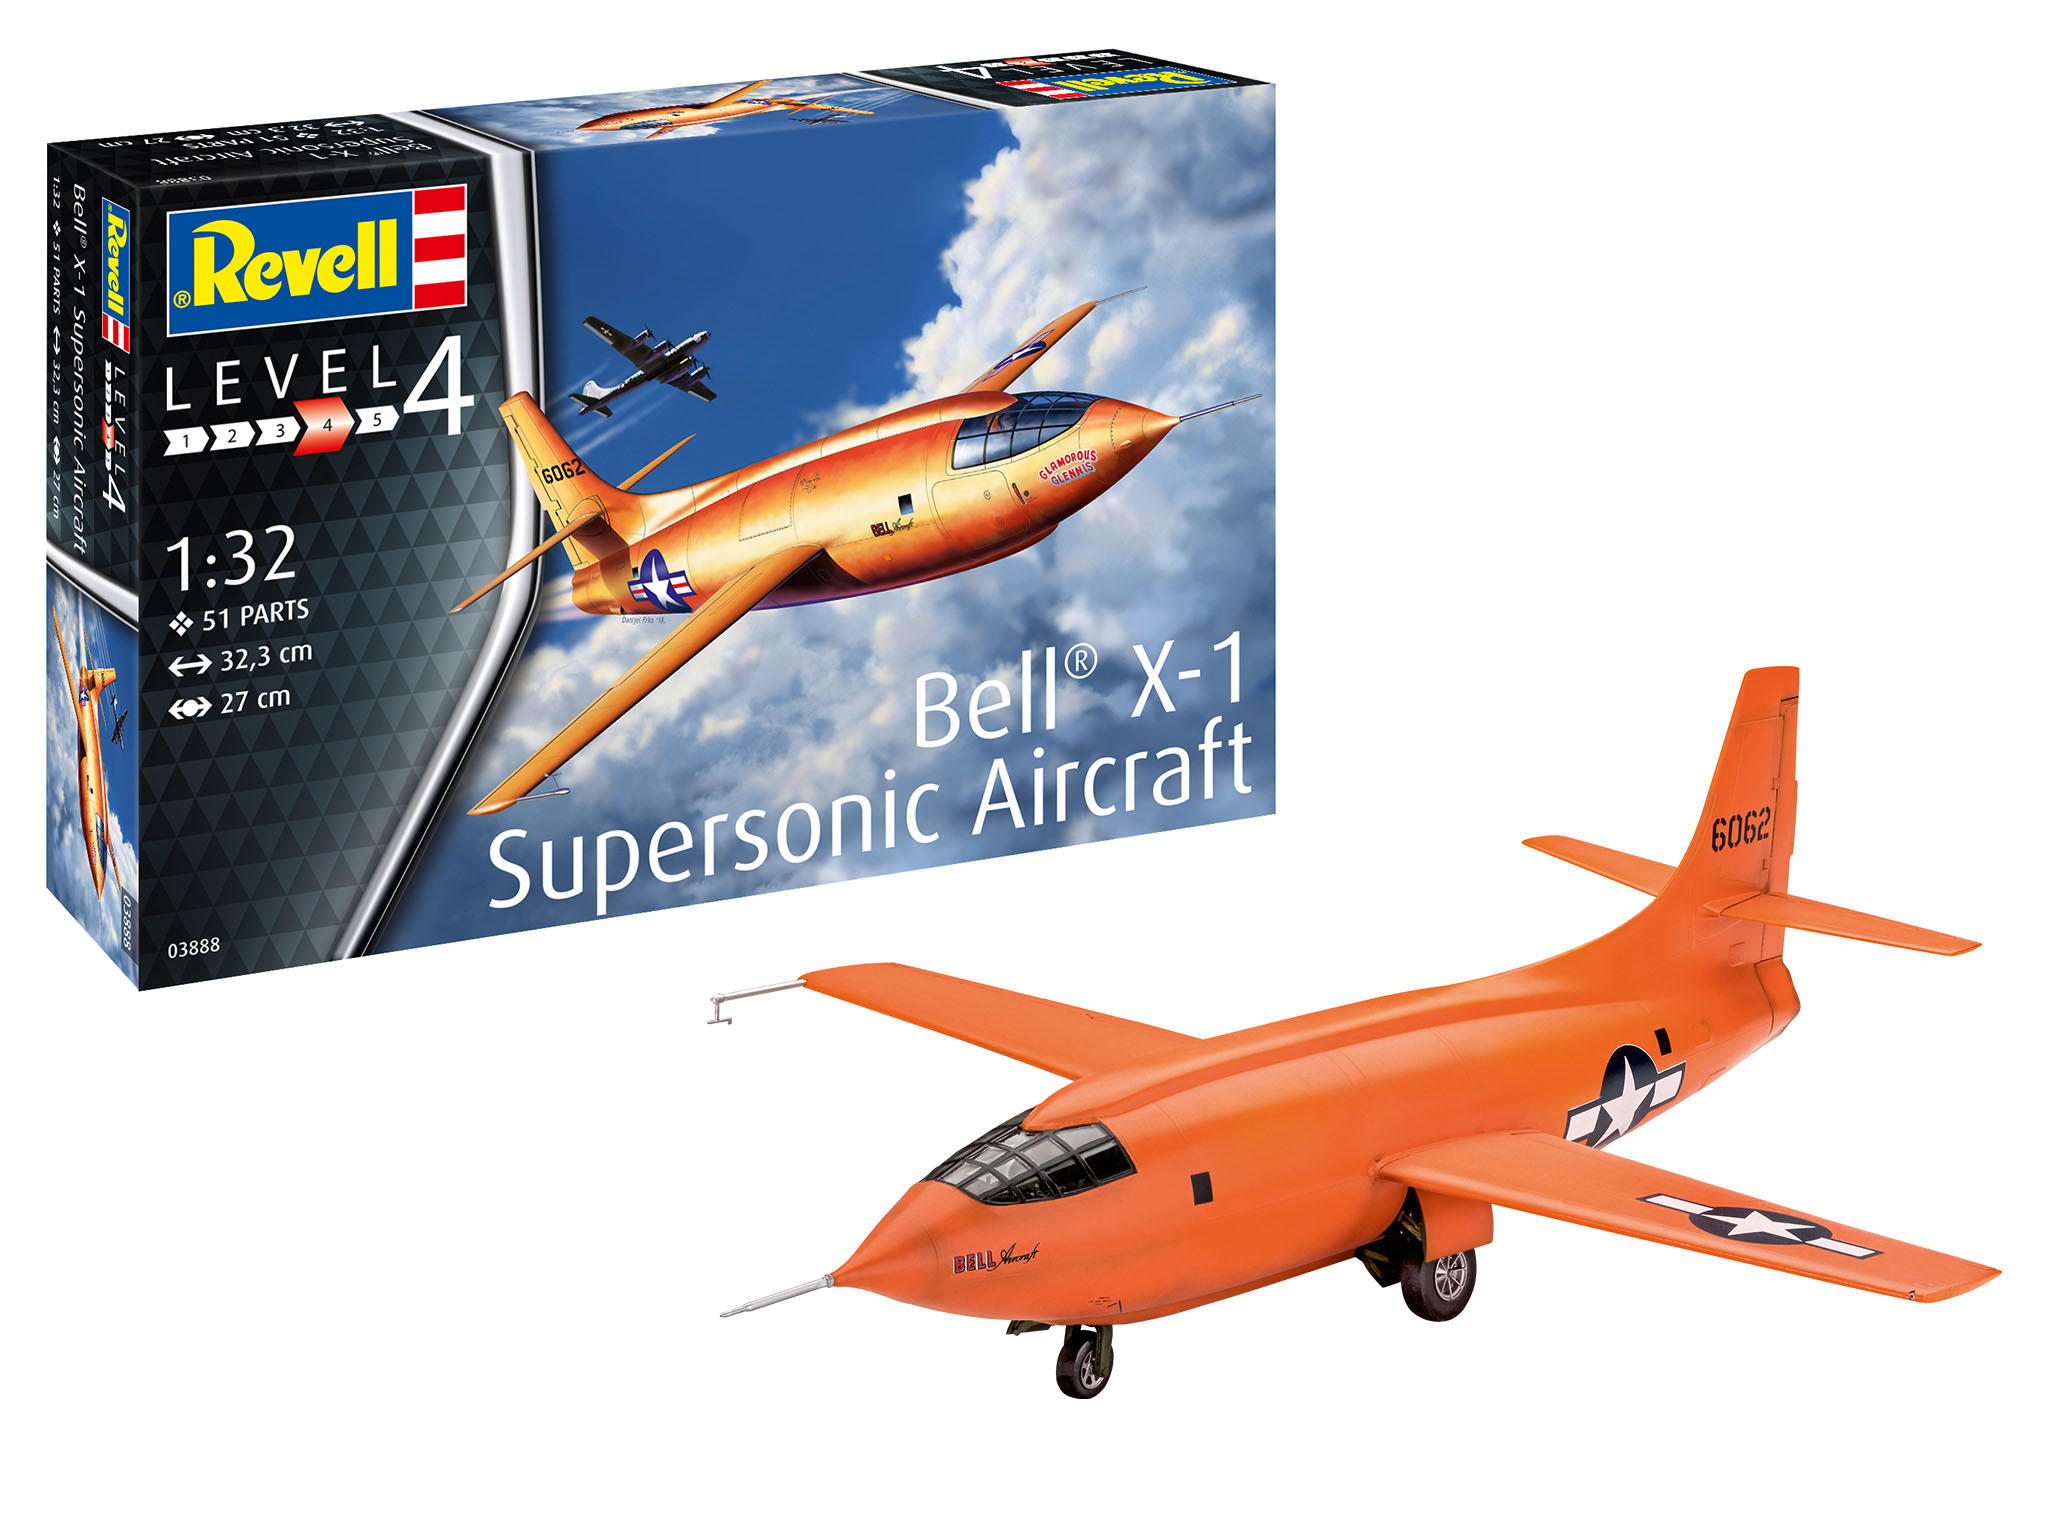 Revell 03888 Bell X-1 Supersonic Aircraft, Bausatz, 1:32